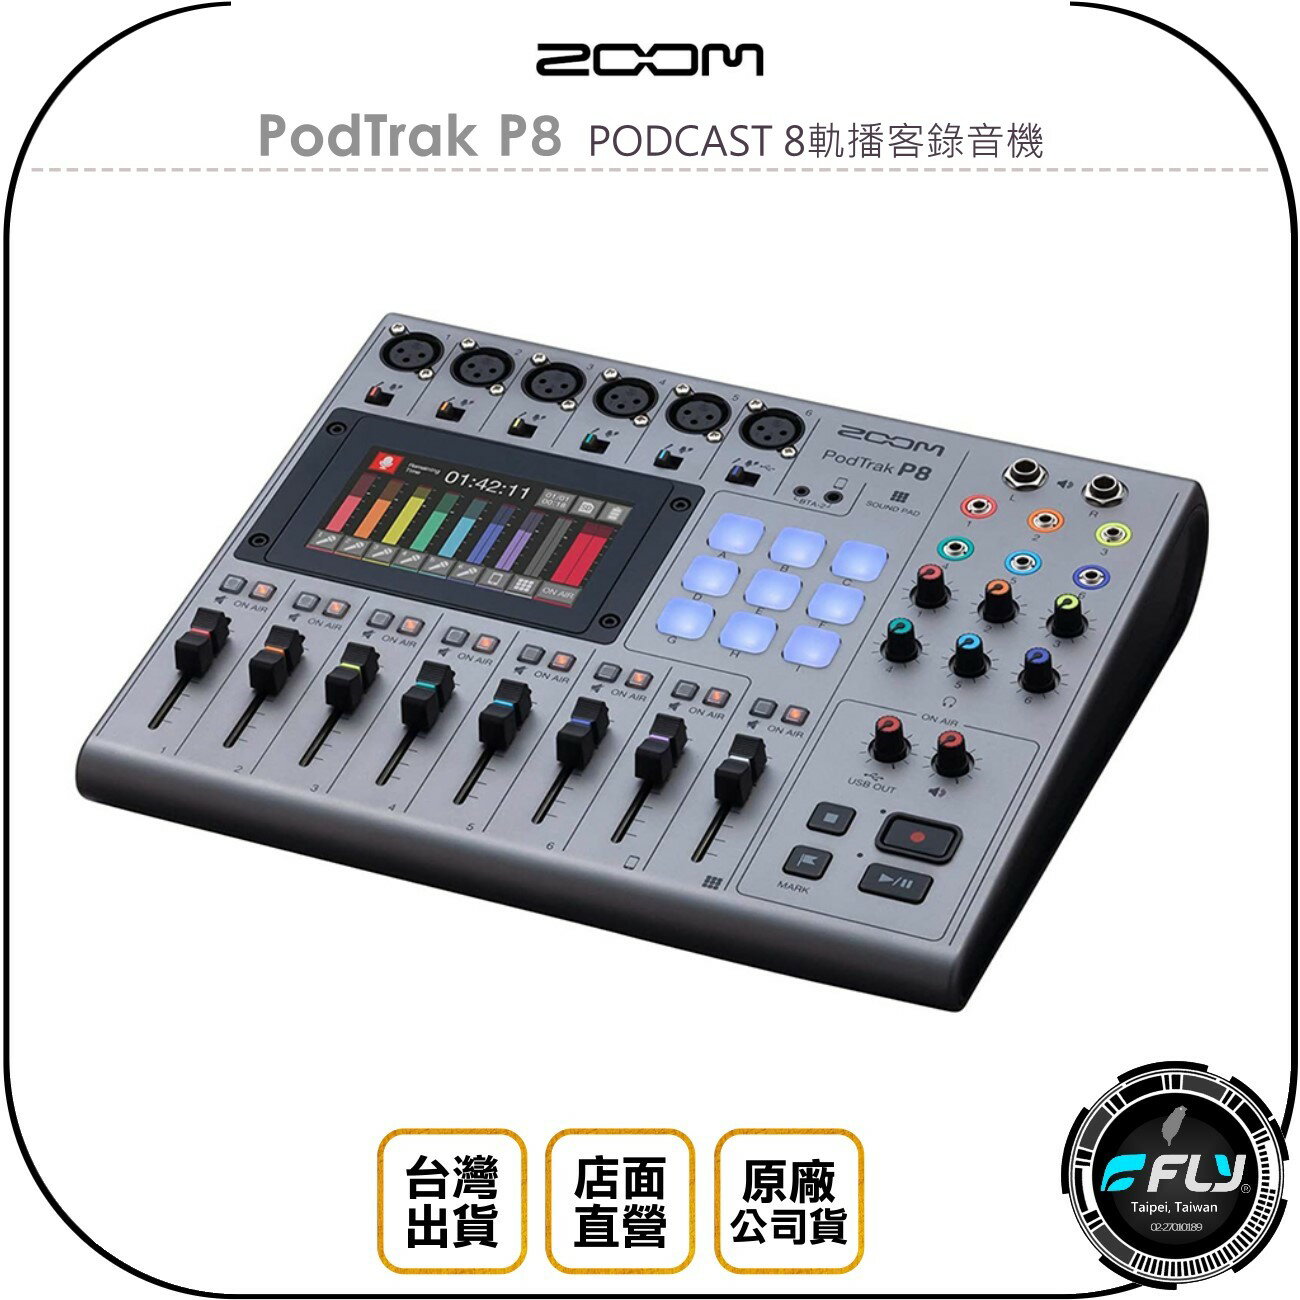 《飛翔無線3C》ZOOM PodTrak P8 PODCAST 8軌播客錄音機◉公司貨◉記錄遠程採訪◉13種預設音效